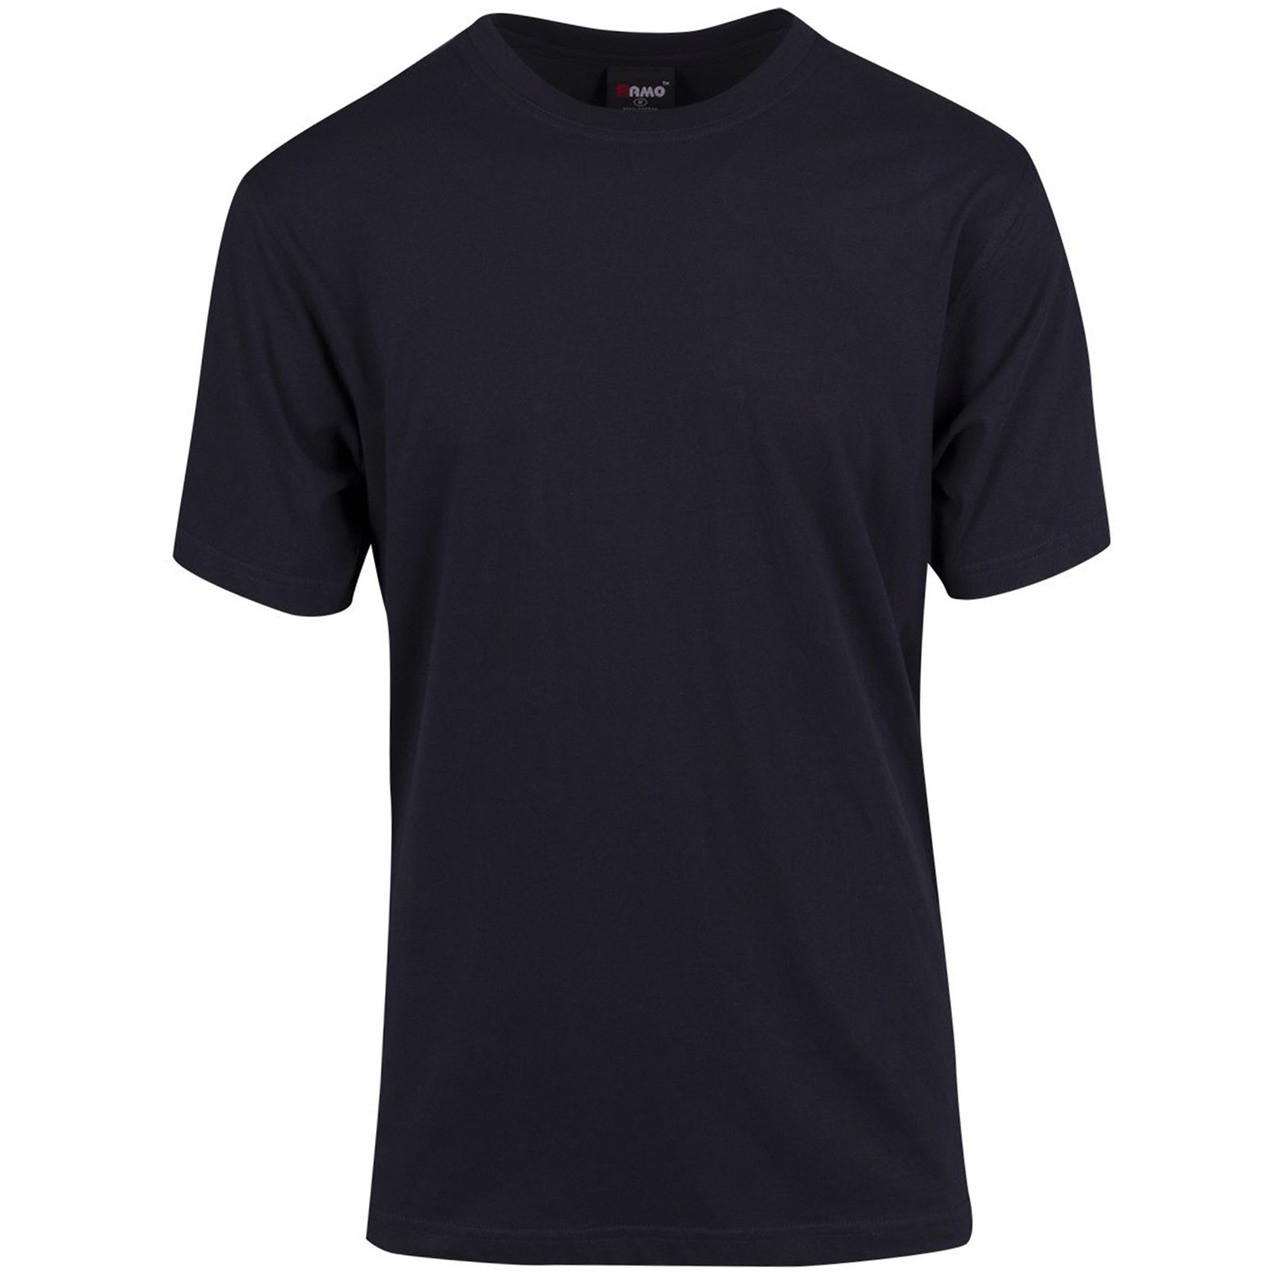 BUDGET | t-shirts Plain Promo Tee | Plain T Shirts | Wholesale T Shirts ...